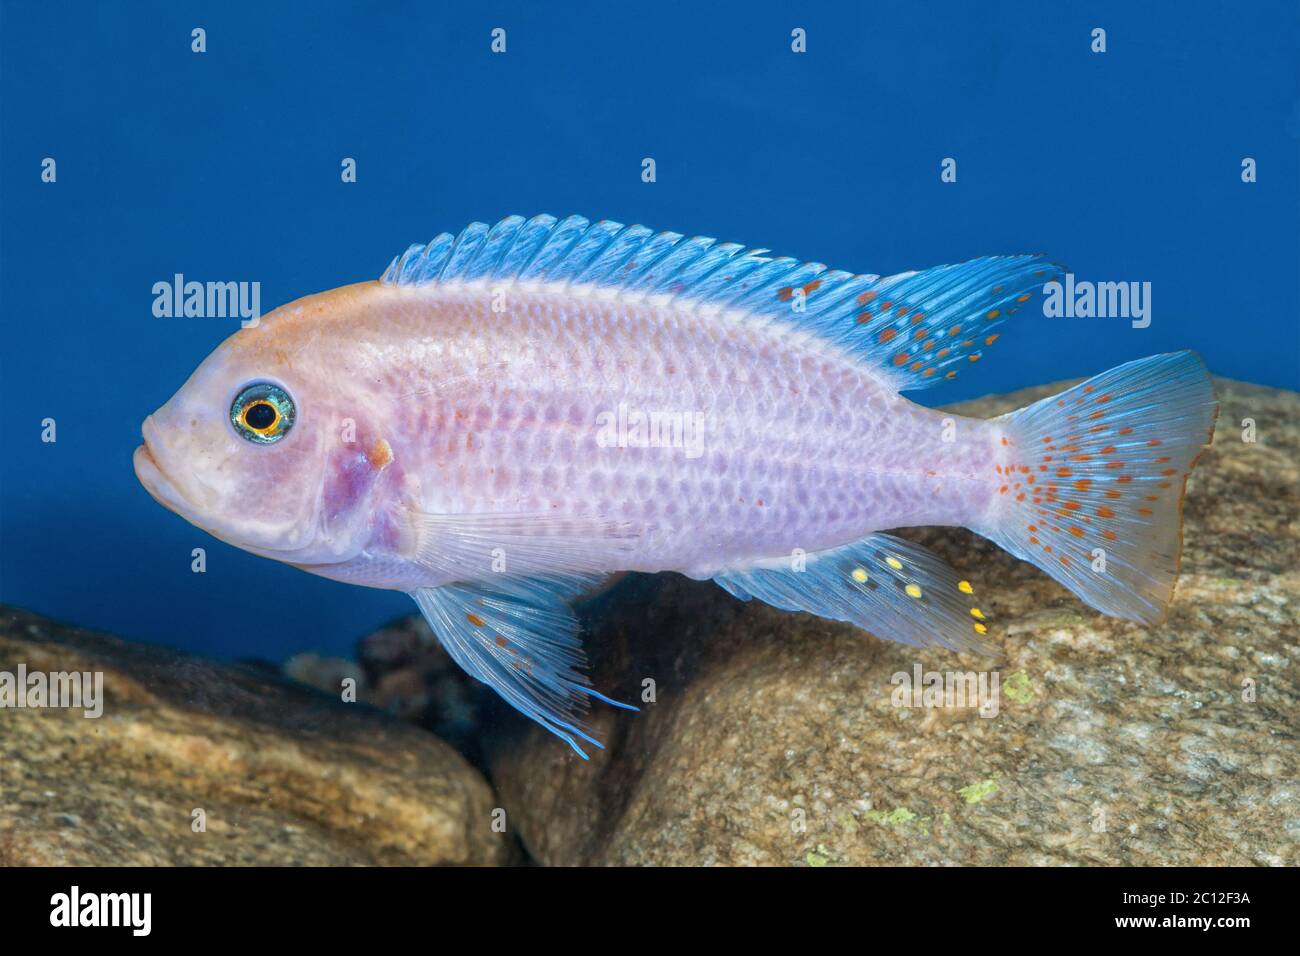 Portrait of cichlid fish (Maylandia zebra) in aquarium Stock Photo